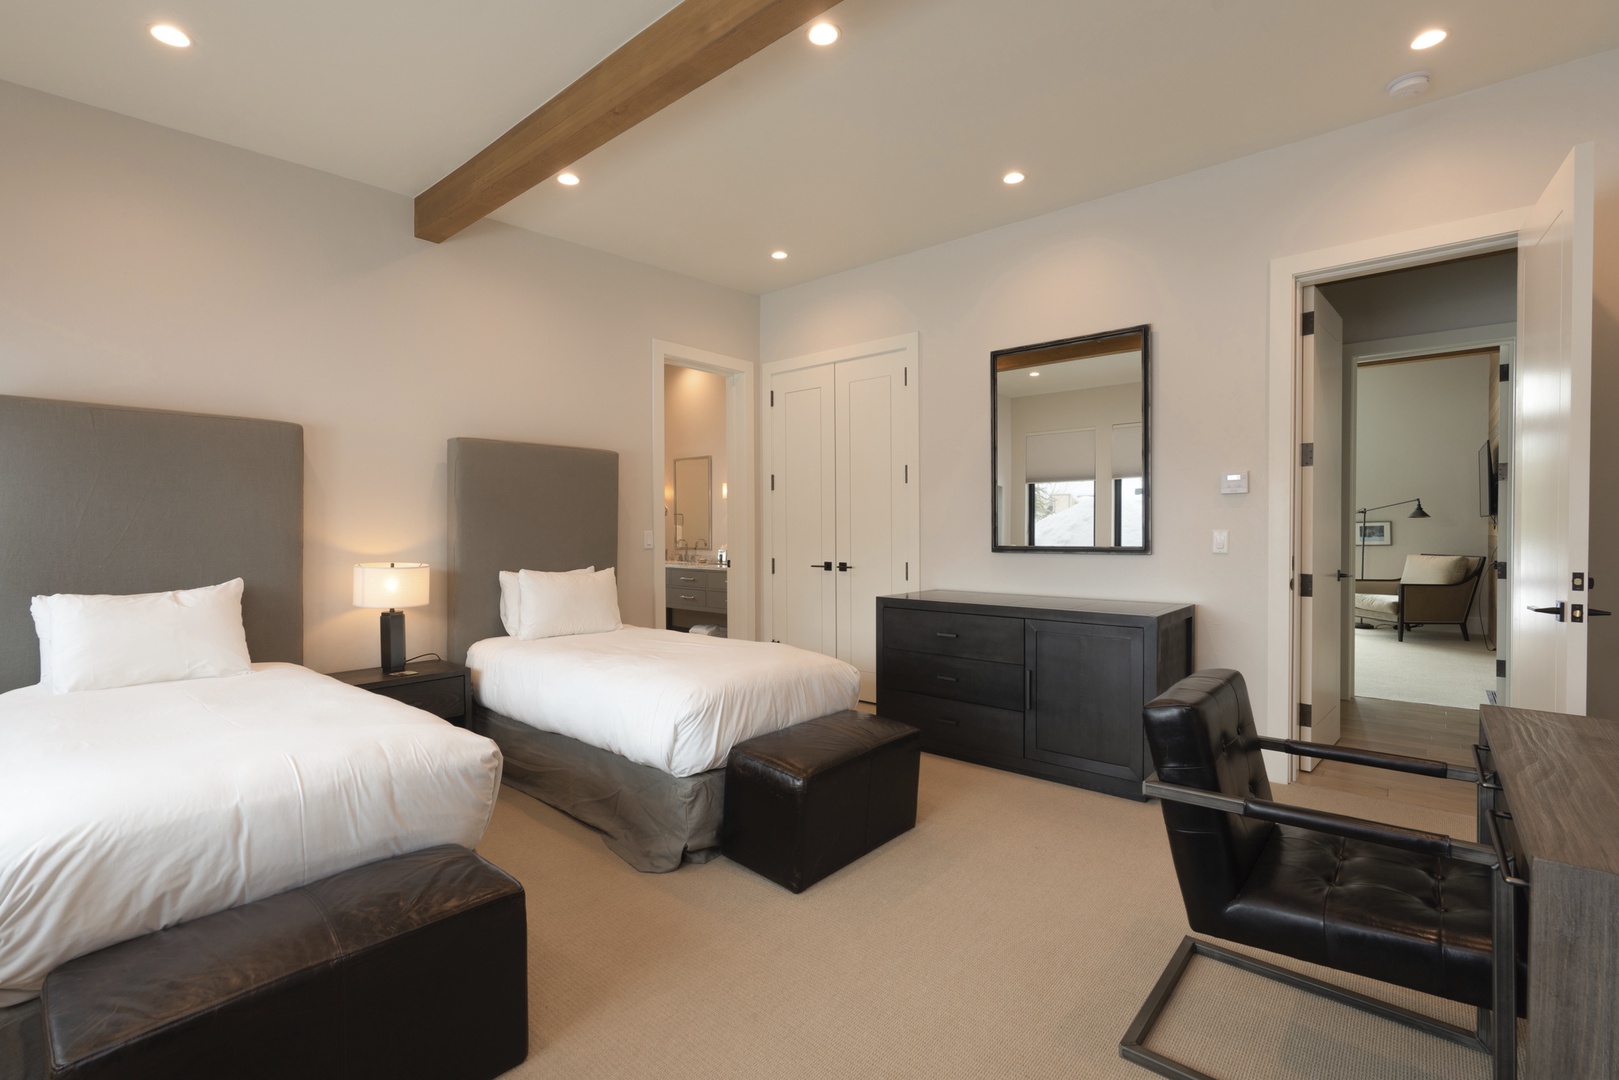 Fairway Lodge 11 - 3 Bedroom